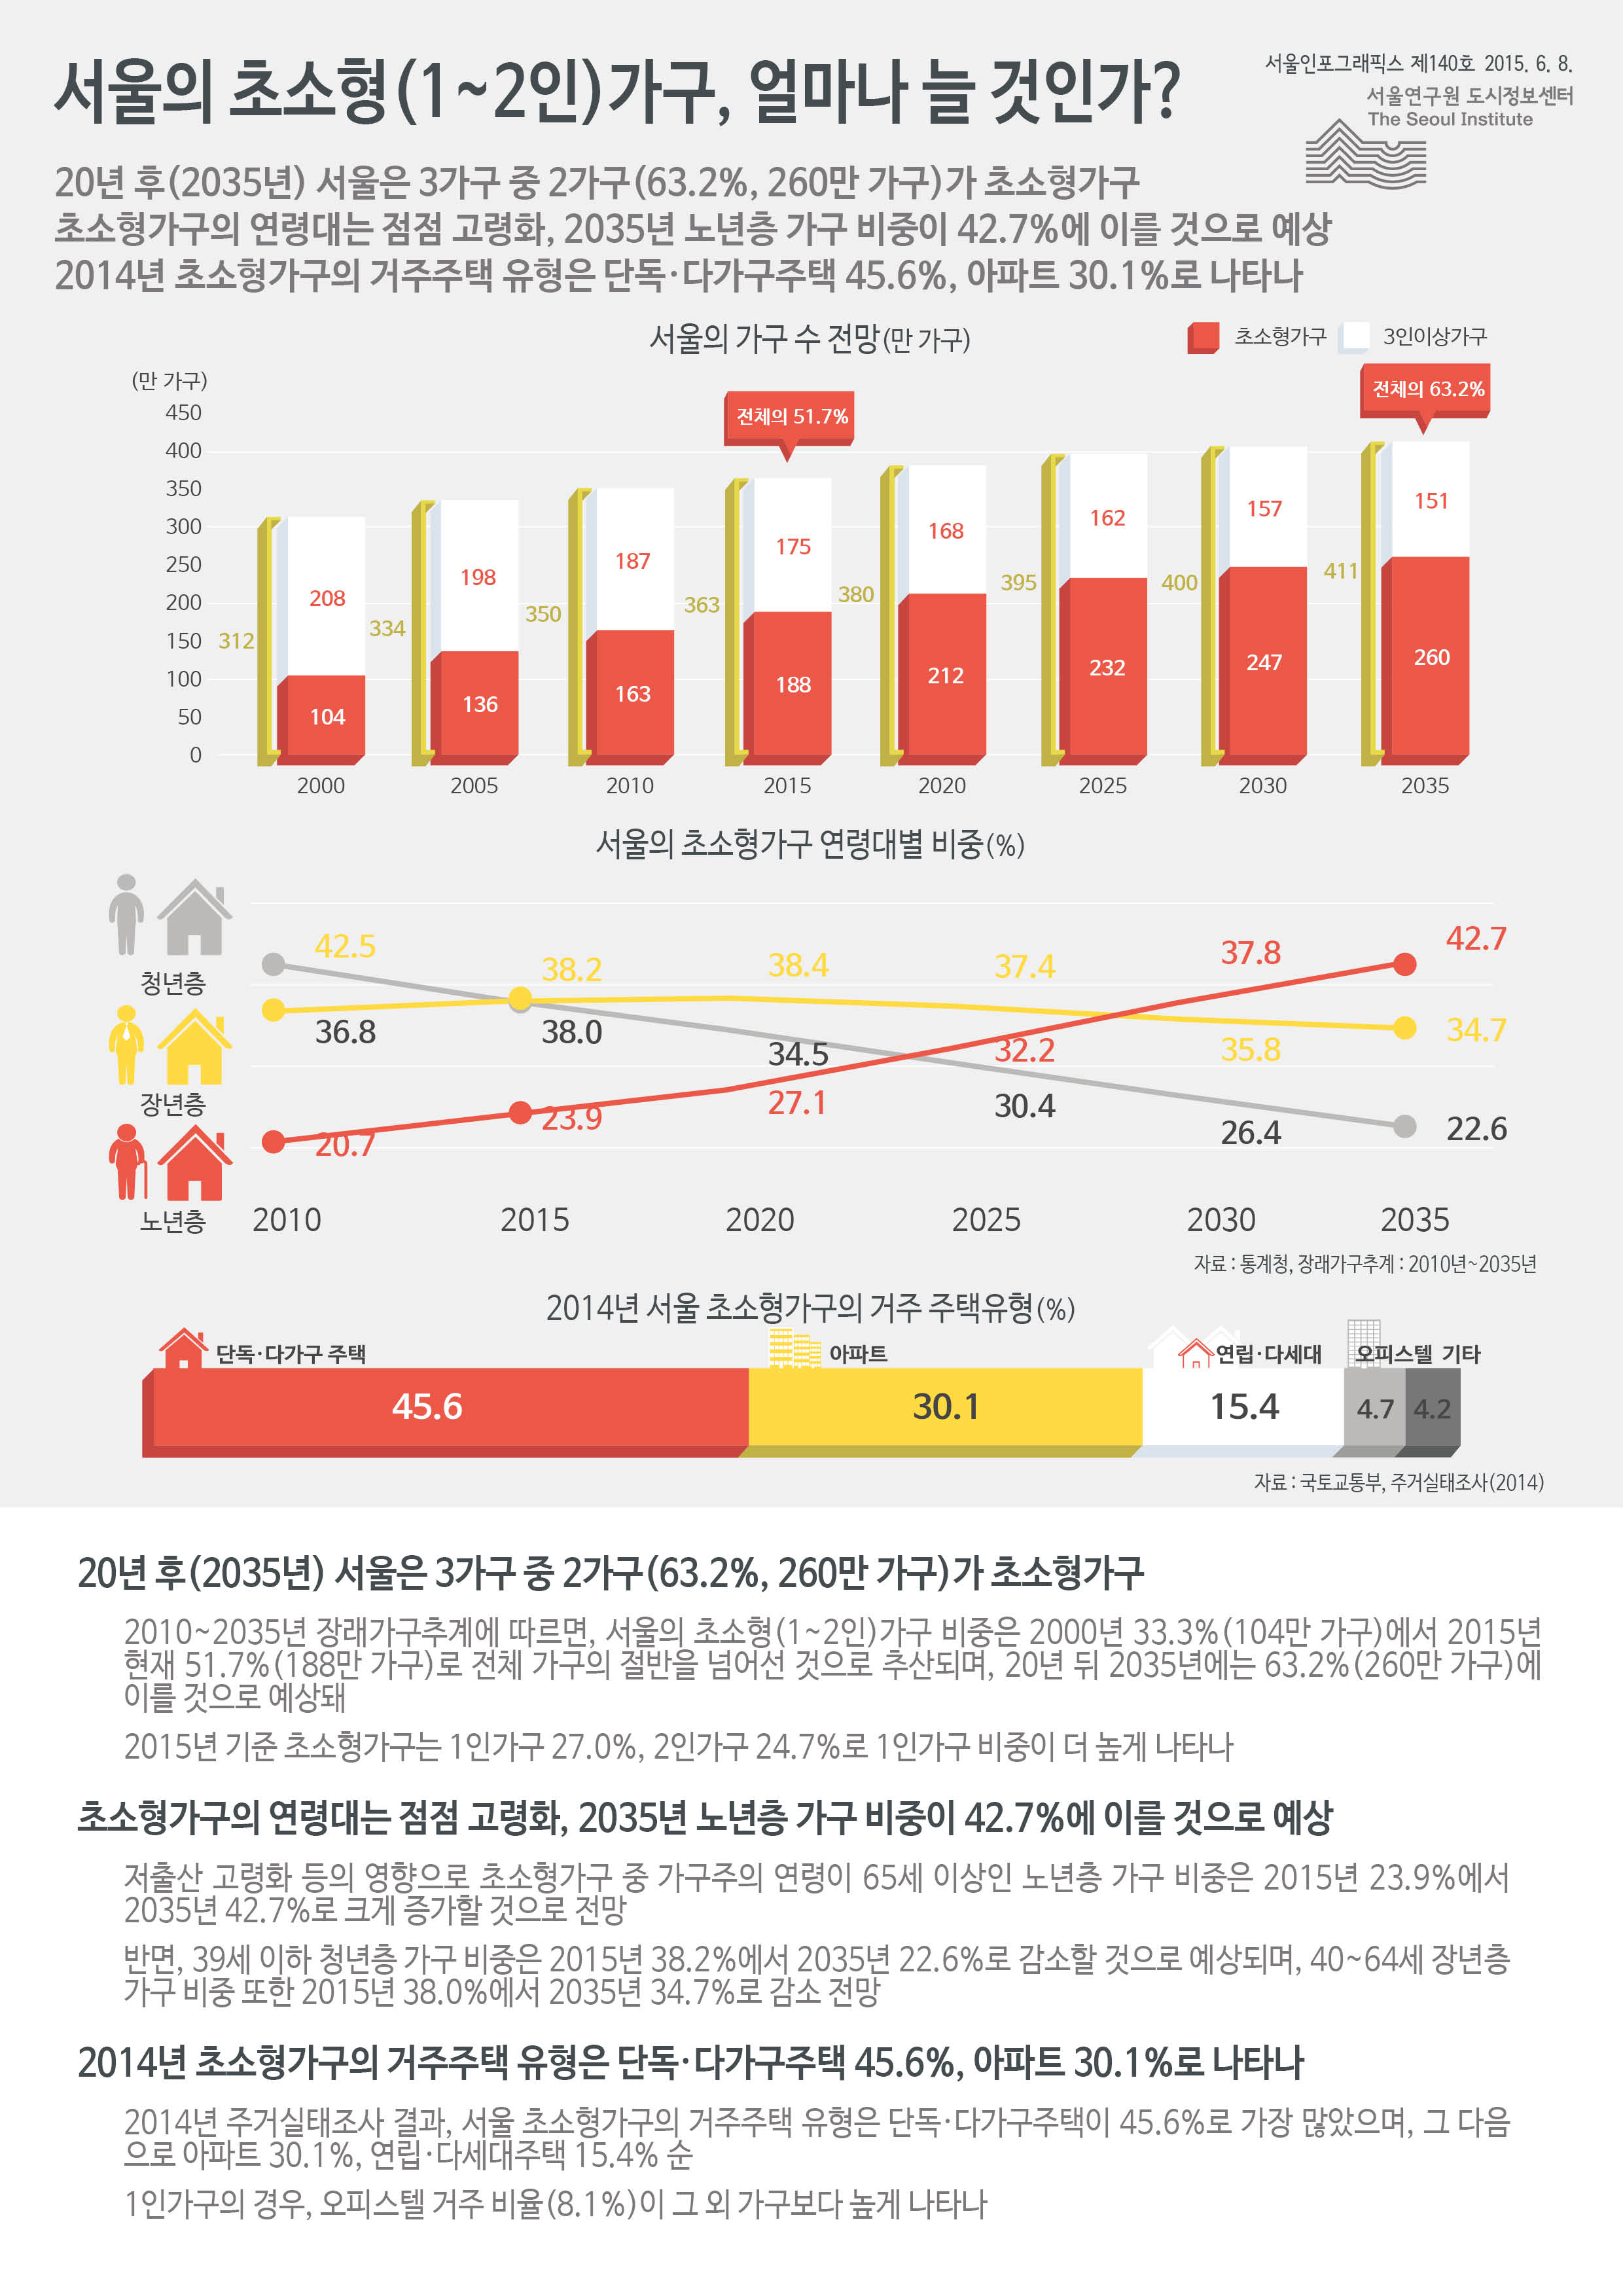 서울의 초소형(1~2인)가구, 얼마나 늘 것인가? 서울인포그래픽스 제140호 2015년 6월 3일 20년 후(2035년) 서울은 3가구 중 2가구(63.2%, 260만 가구)가 초소형가구. 초소형가구의 연령대는 점점 고령화, 2035년 노년층 가구 비중이 42.7%에 이를 것으로 예상. 2014년 초소형가구의 거주주택 유형은 단독·다가구주택 45.6%, 아파트 30.1%로 나타남으로 정리될 수 있습니다. 인포그래픽으로 제공되는 그래픽은 하단에 표로 자세히 제공됩니다.